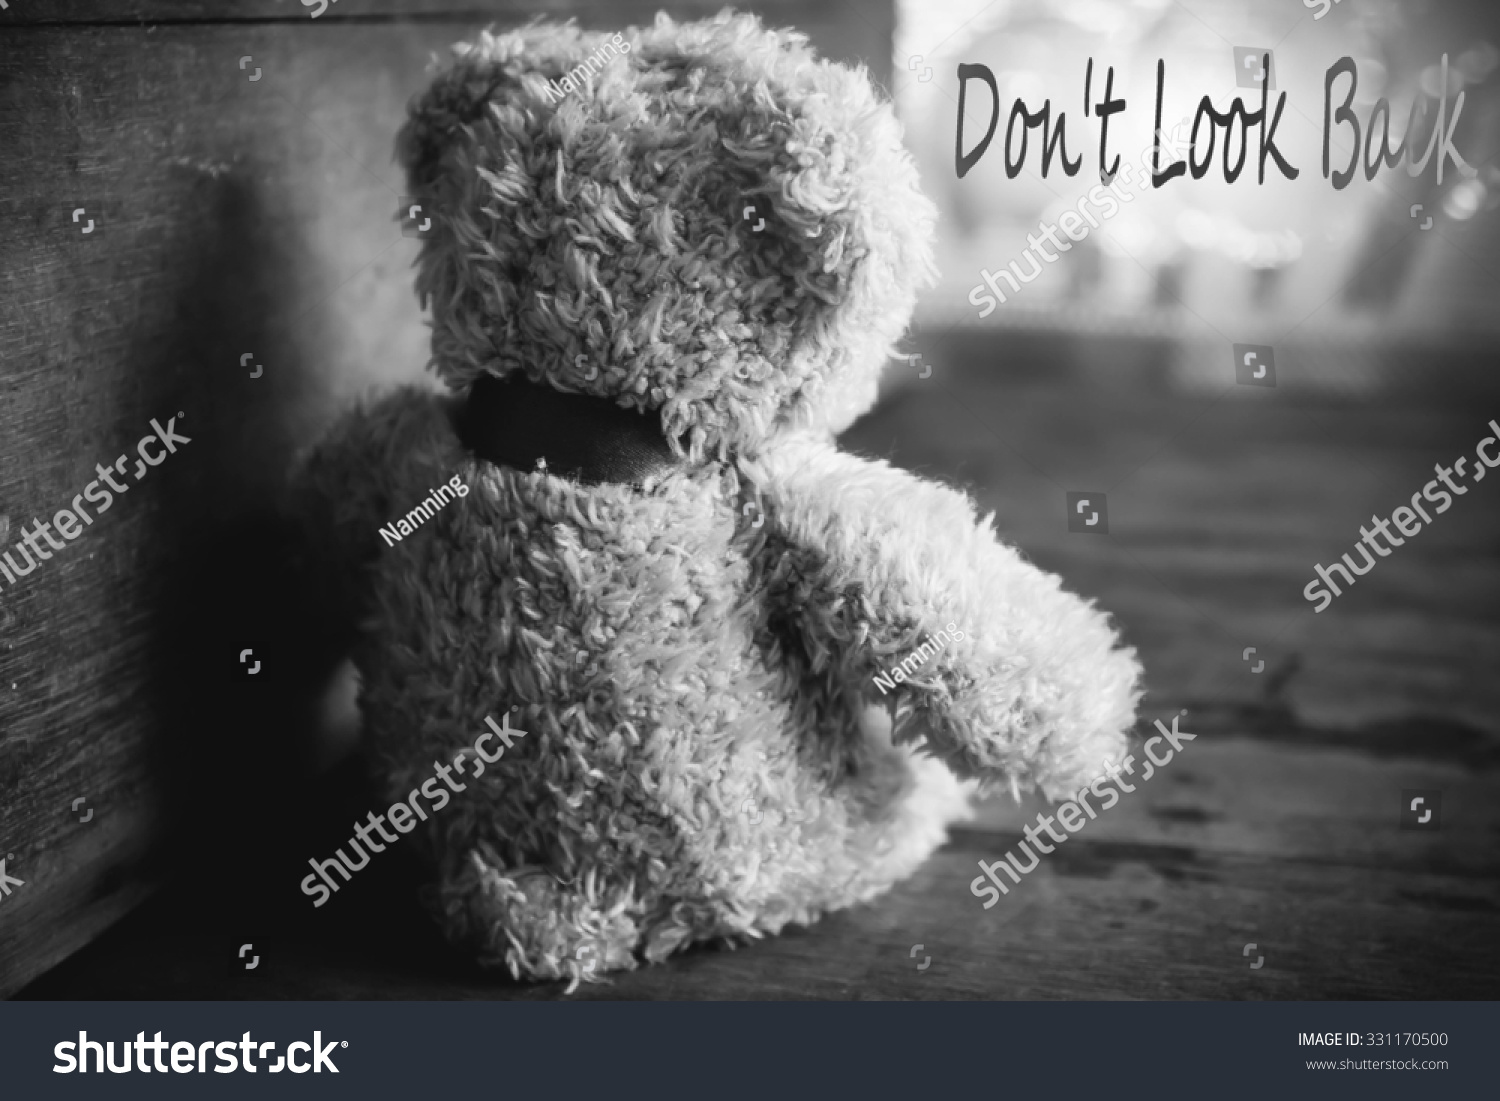 teddy bear sad